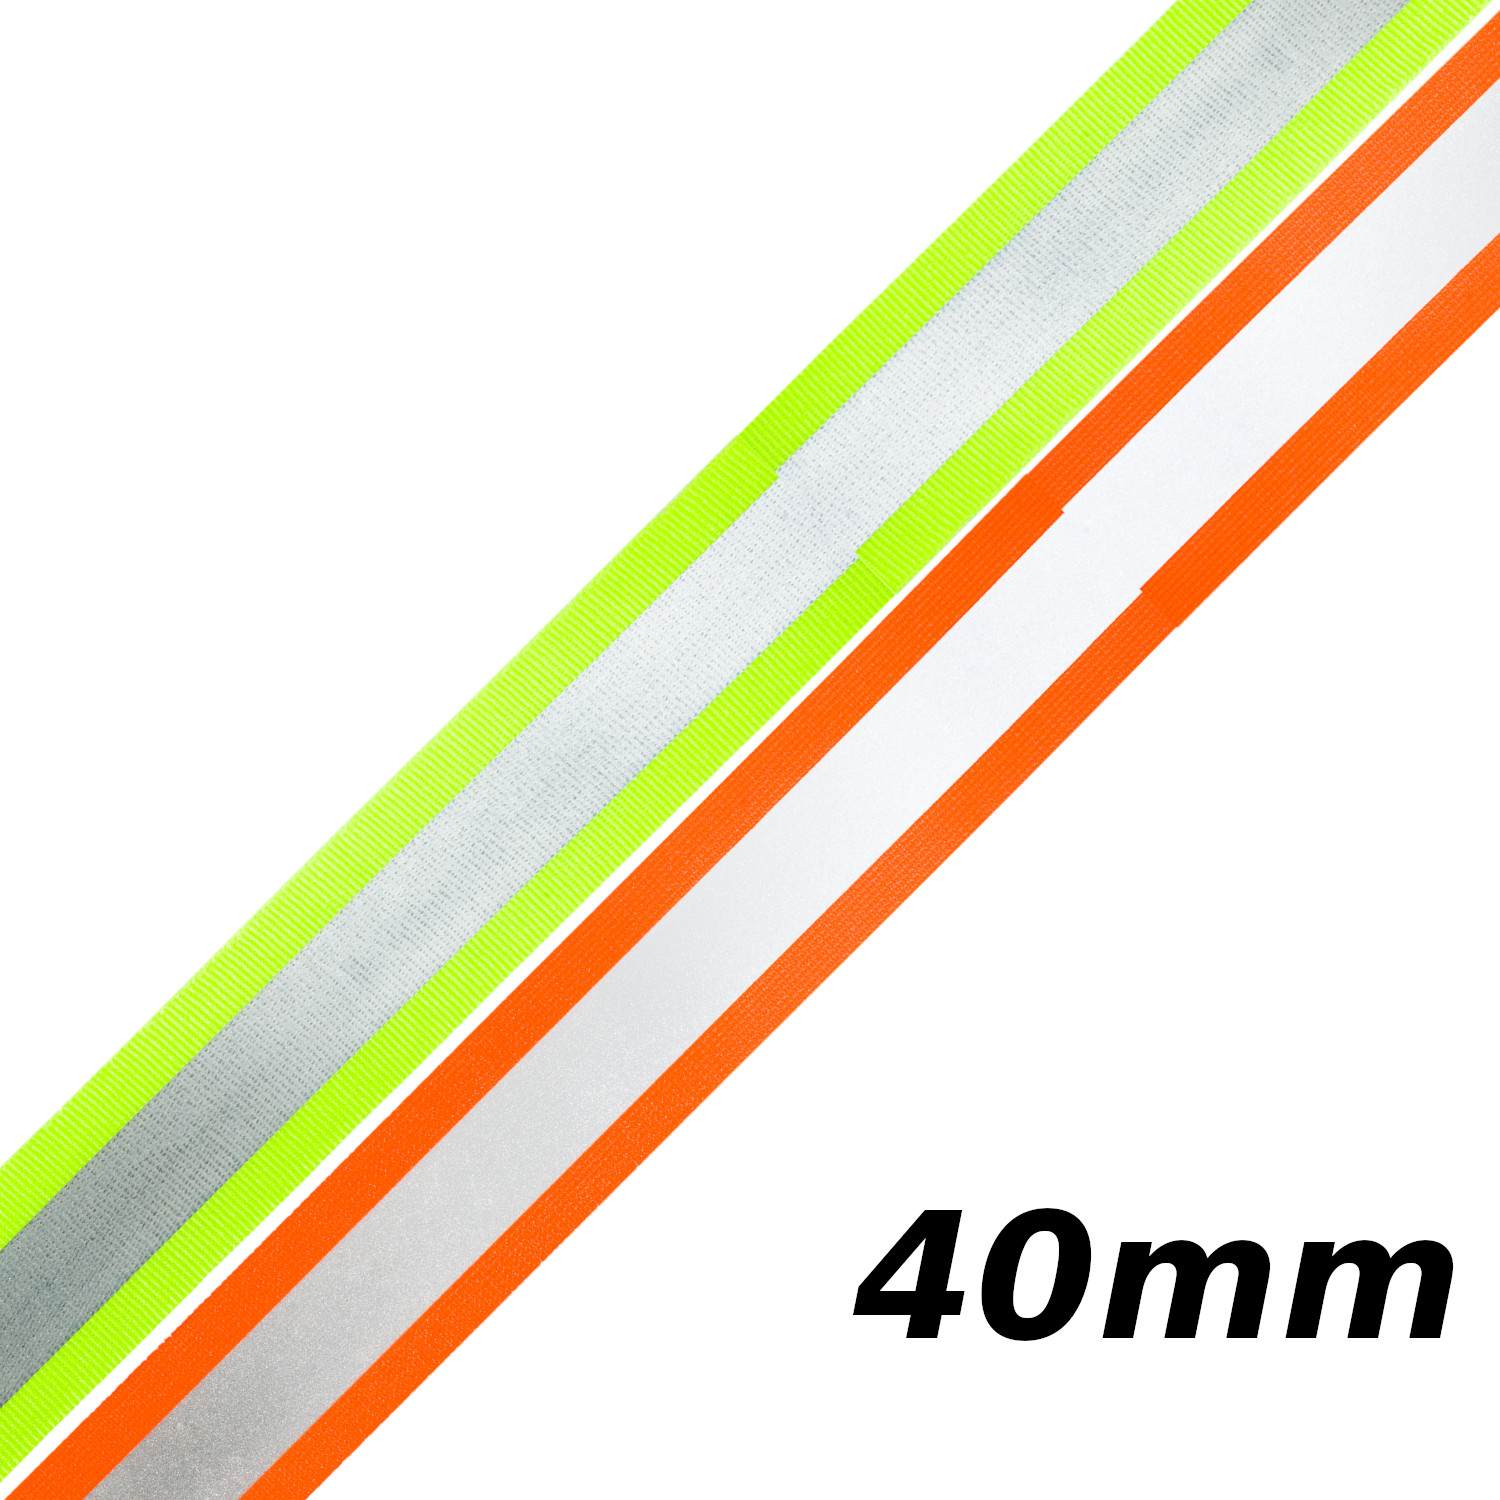 Reflektorband 40mm breit in 2 Farben